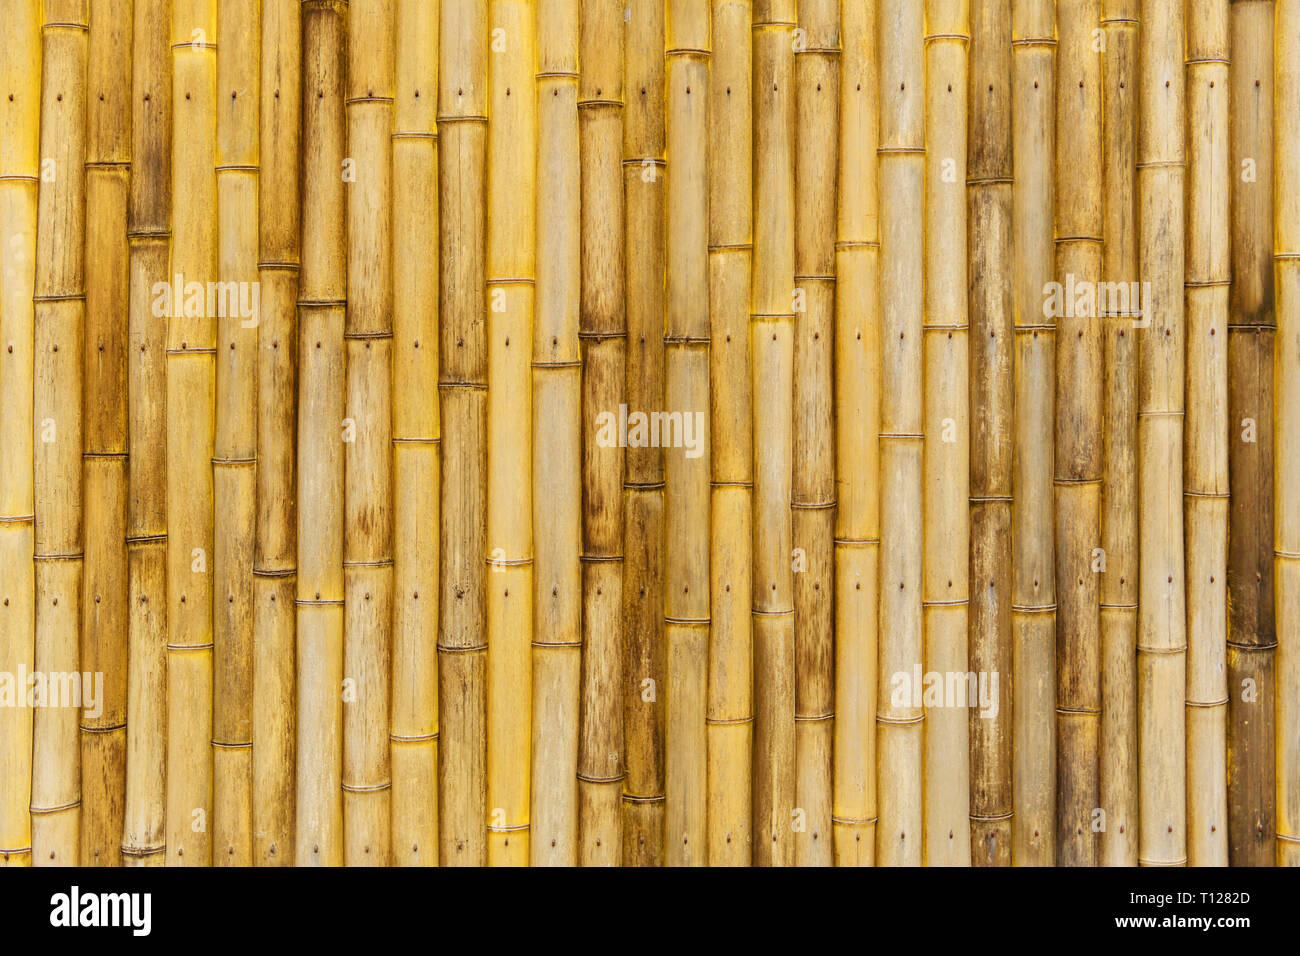 Artesanía De Bambú Tejido Textura Mimbre Natural De Fondo Fotos, retratos,  imágenes y fotografía de archivo libres de derecho. Image 36503746